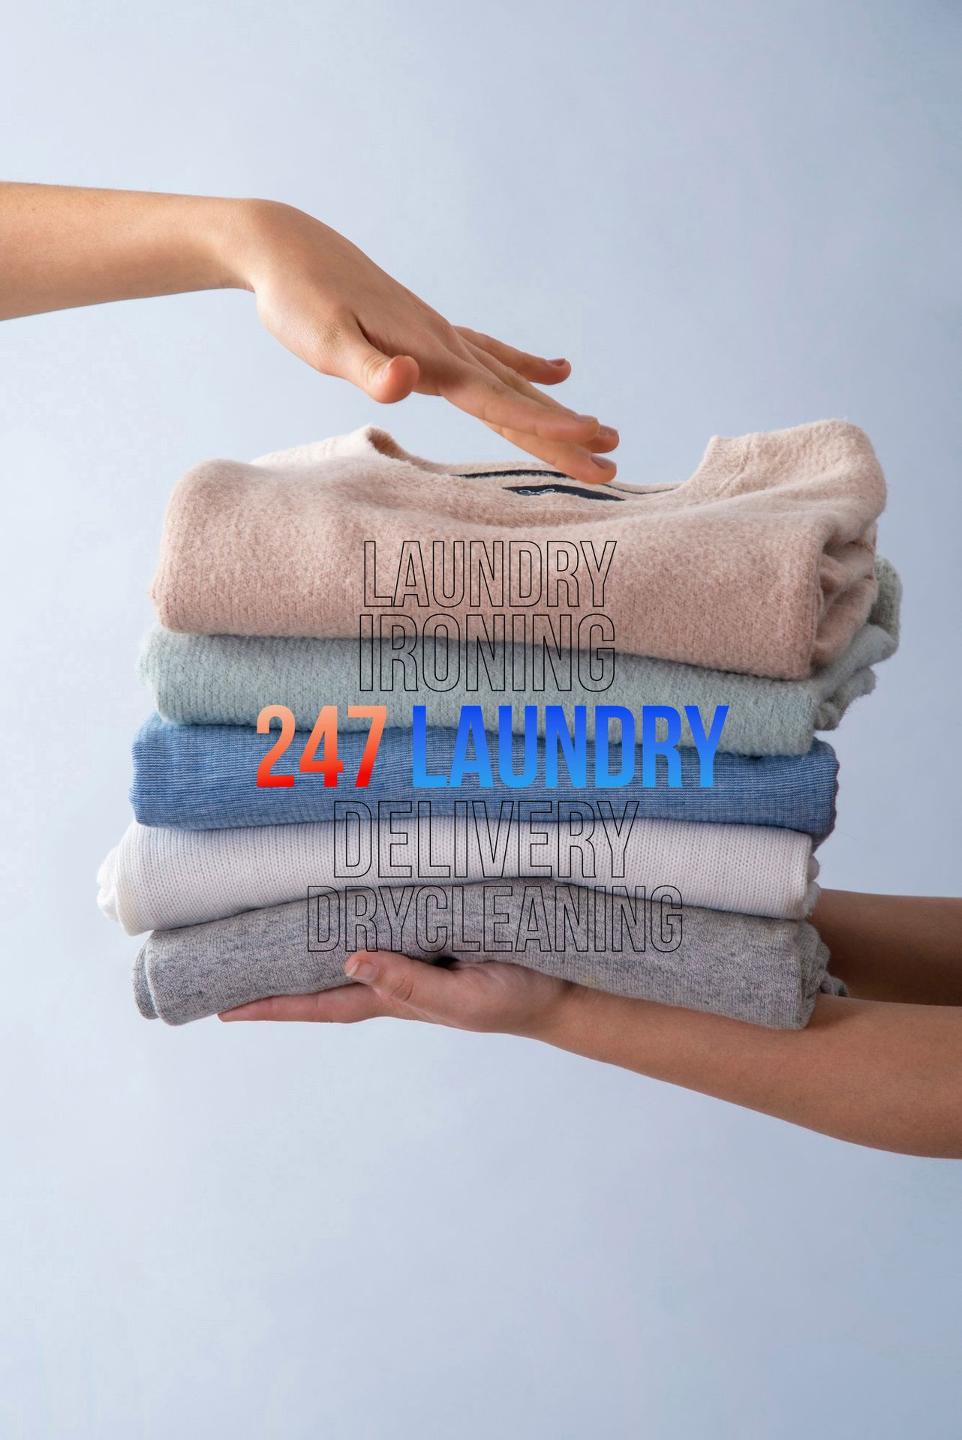 Dịch vụ giặt ủi, vệ sinh chăm sóc quần áo với chất lượng cao cấp, dịch vụ chuyên nghiệp tại Giặt ủi 247